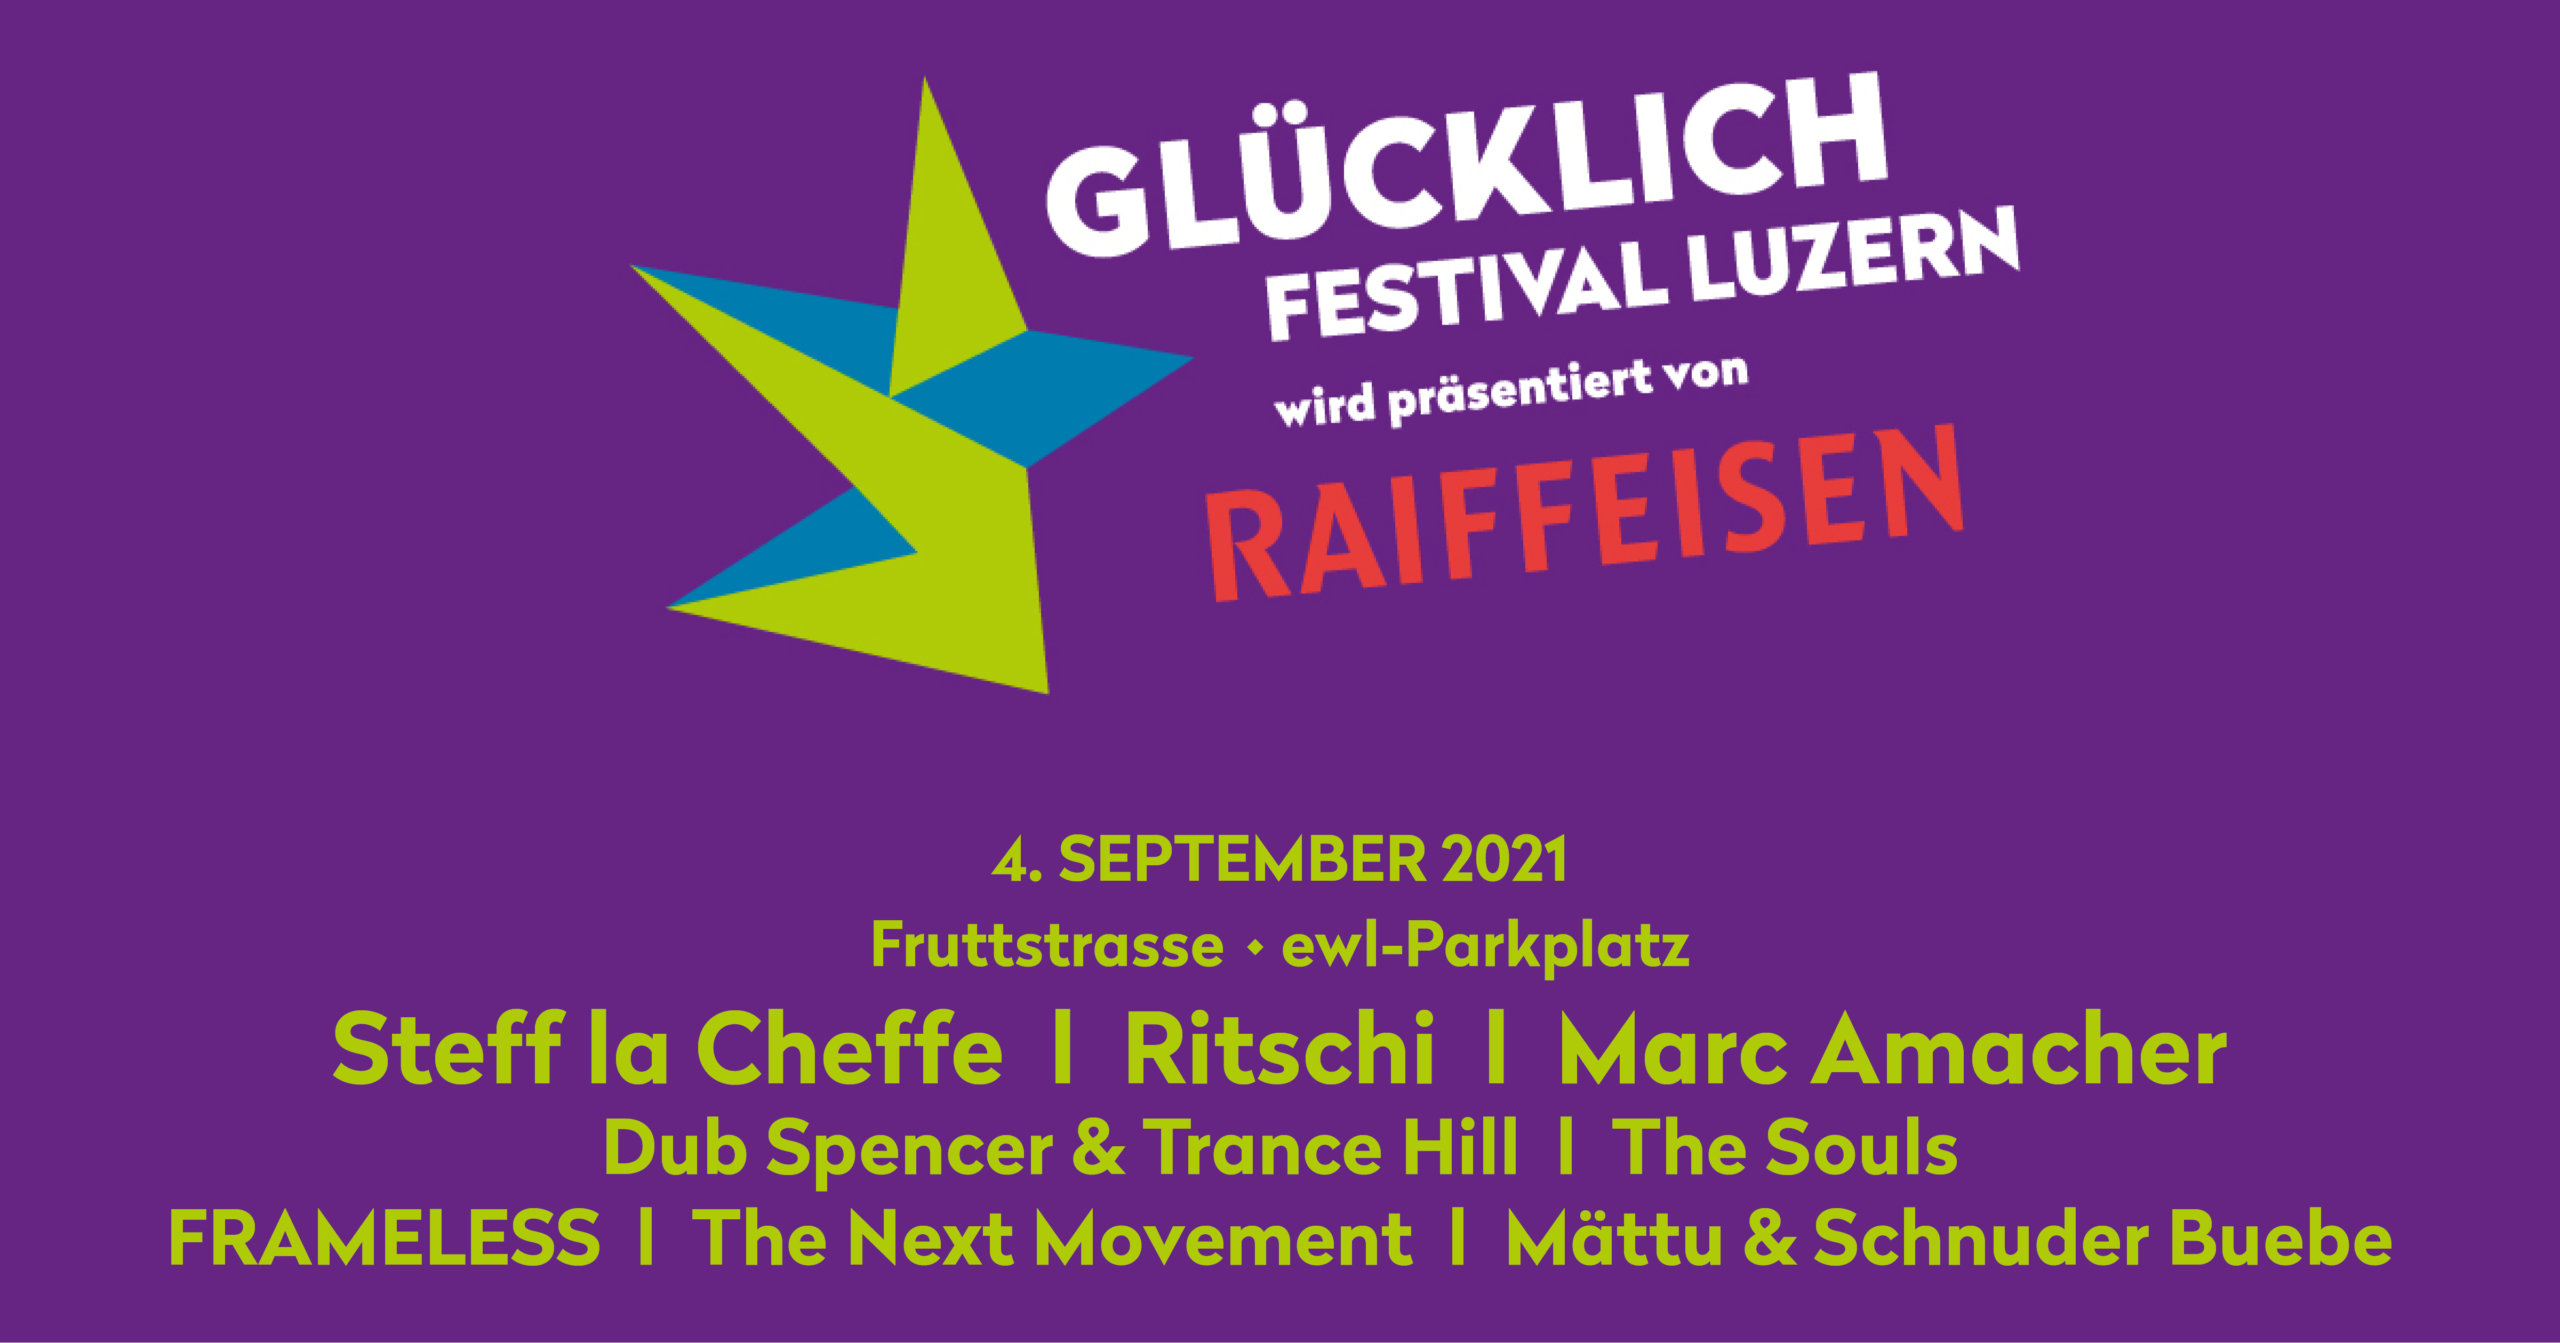 Glücklich Festival Luzern – präsentiert von RAIFFEISEN